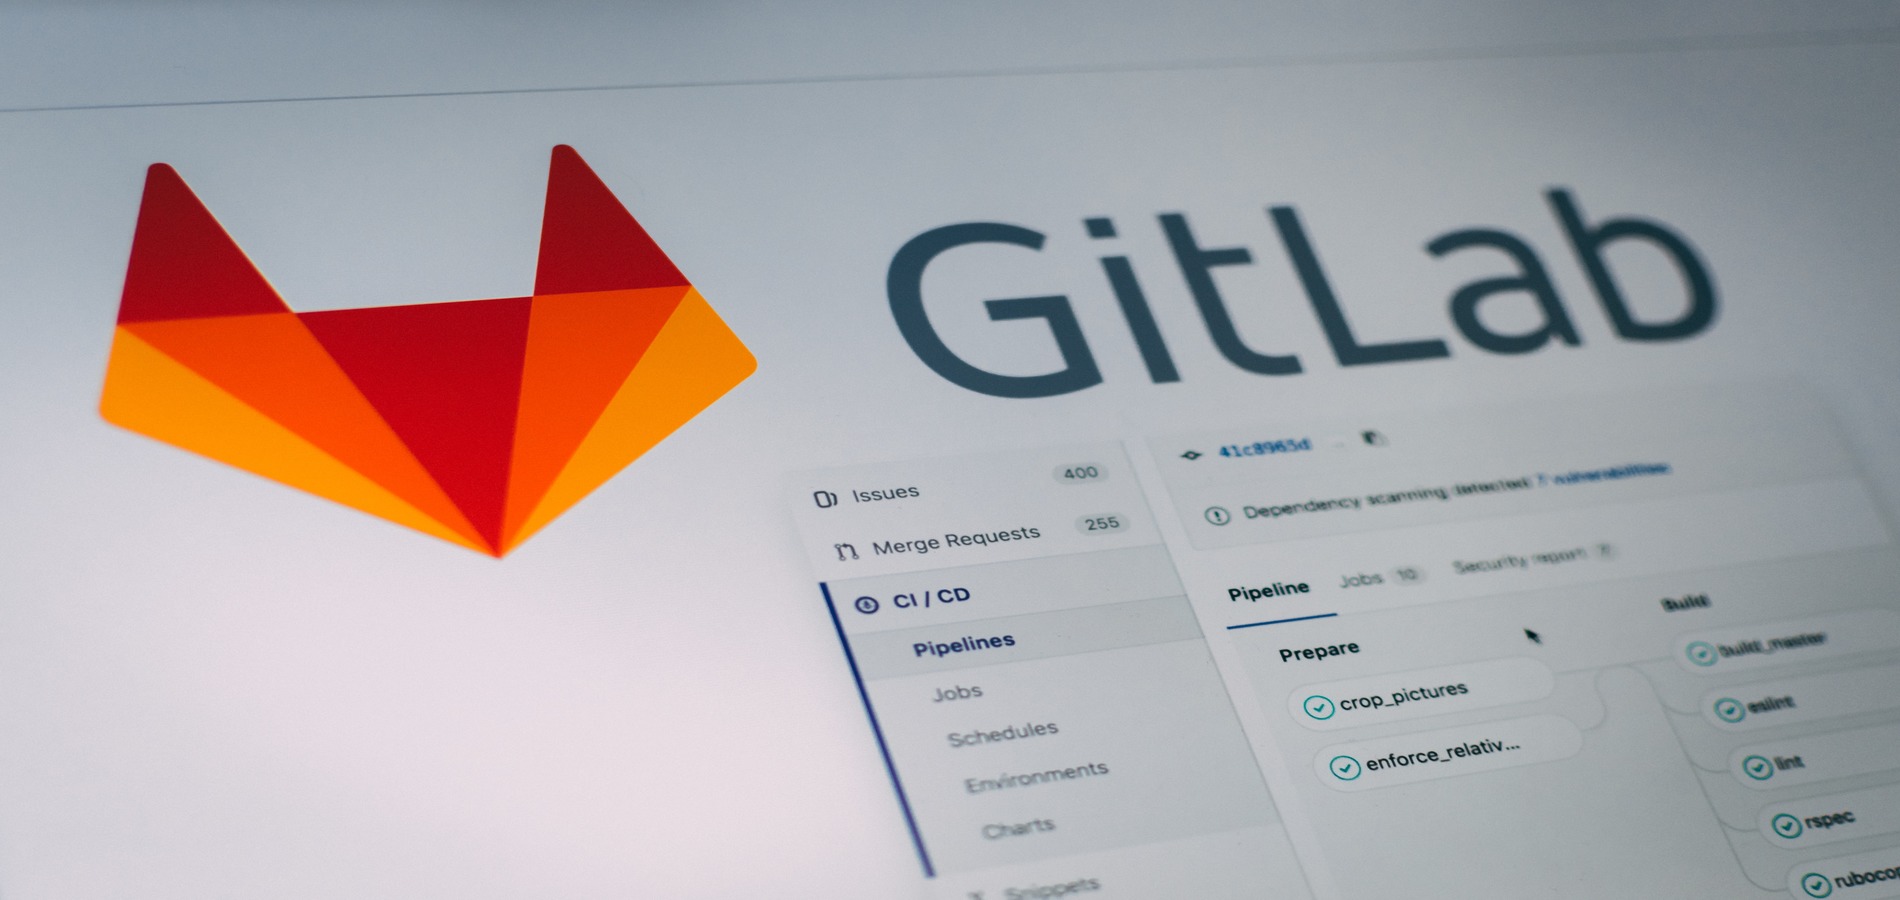 GitLab представили функцию на базе ИИ для поиска уязвимостей в коде